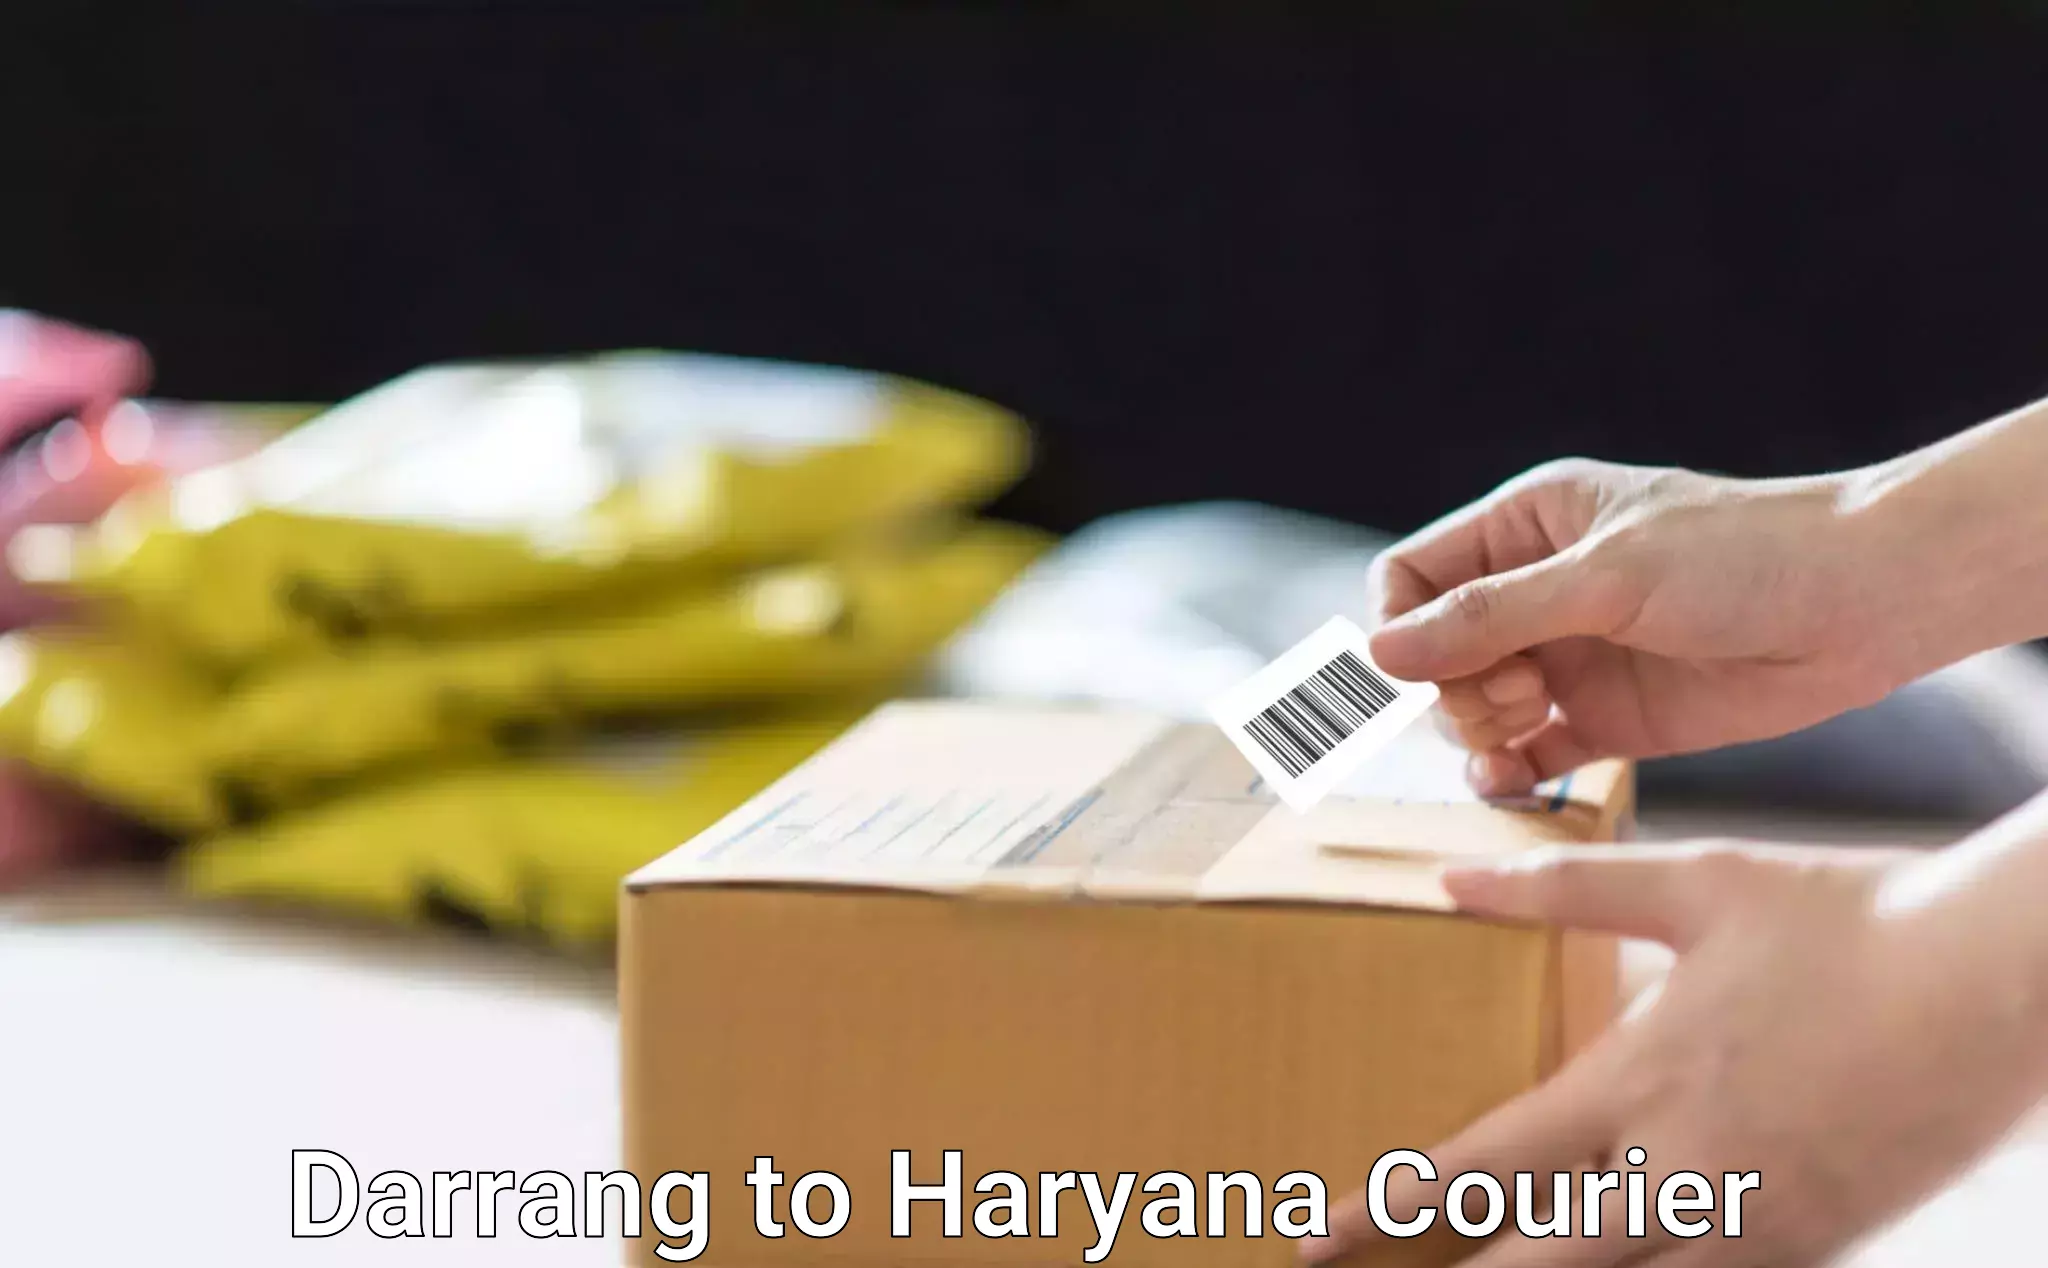 Modern courier technology Darrang to Gurugram